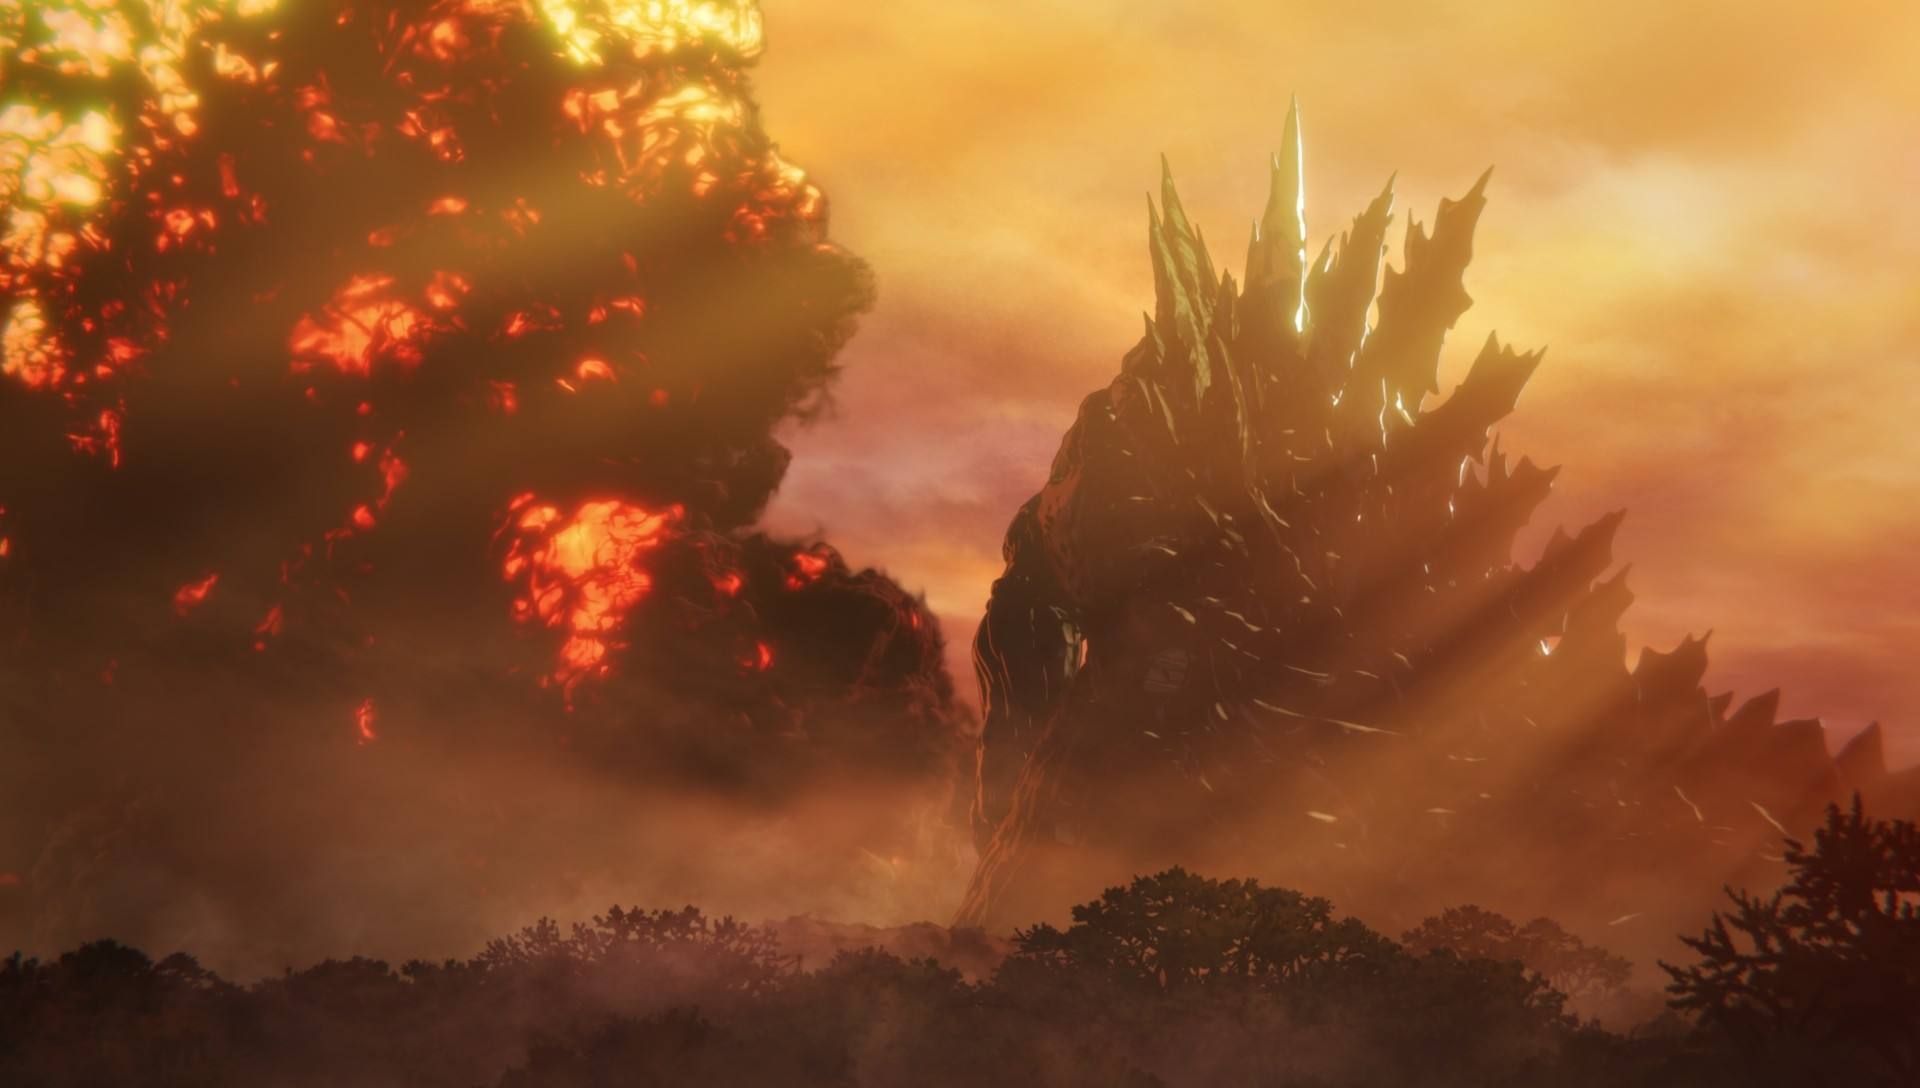 LA VERSIÓN MÁS BRUTAL DE GODZILLA  Godzilla Earth: Habilidades y Poderes 